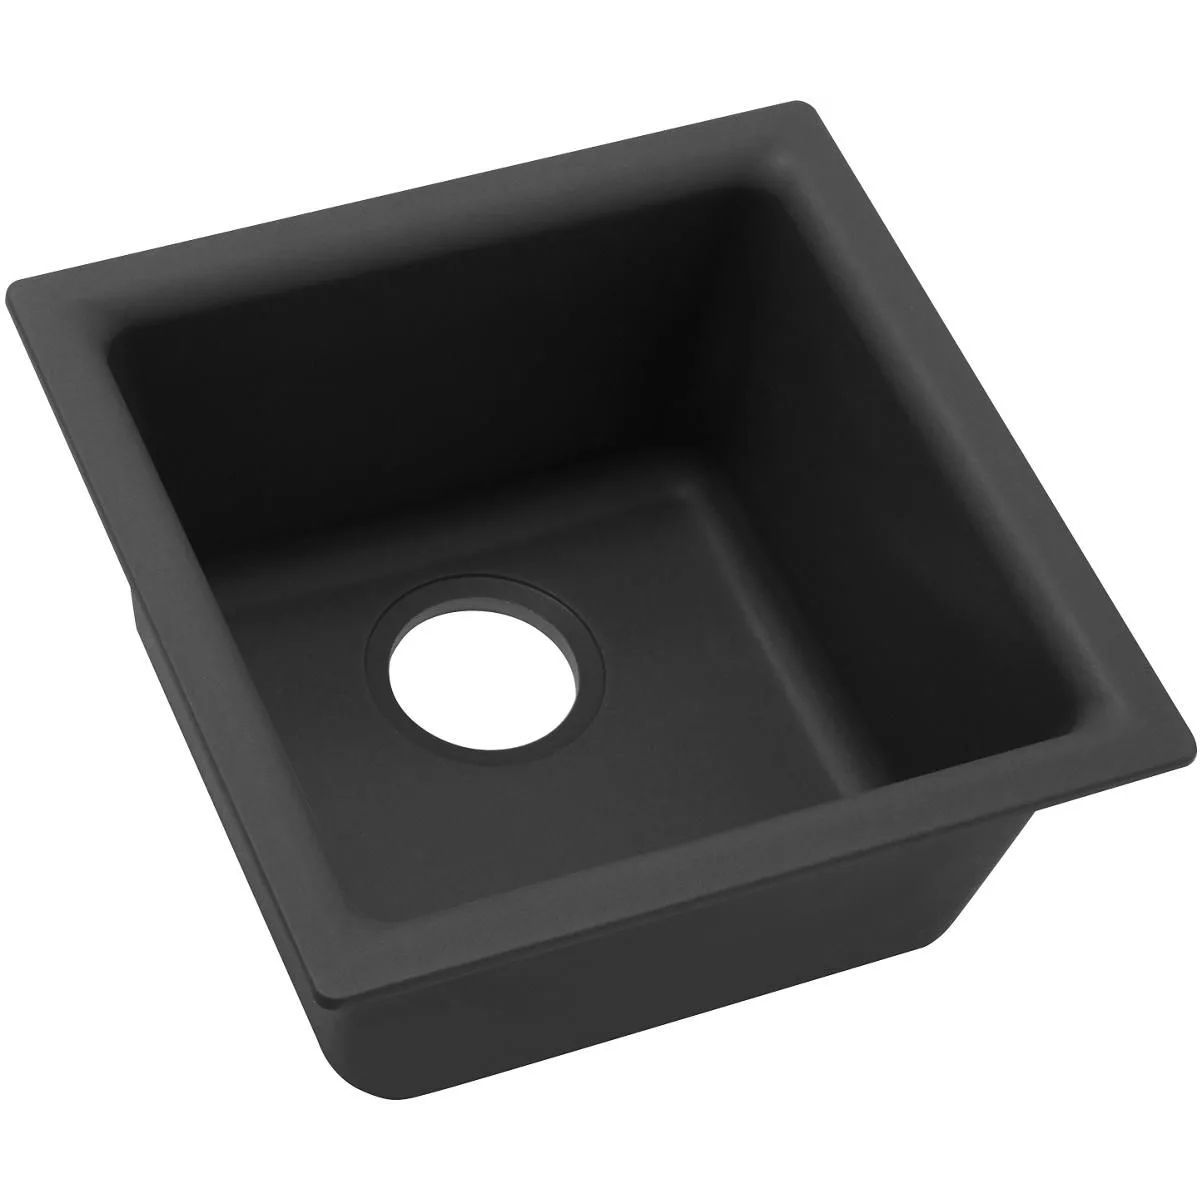 Elkay ELG1616BK0 Black Quartz Classic 15-3/4" Drop In Single Basin Quartz Bar Sink | Build.com, Inc.